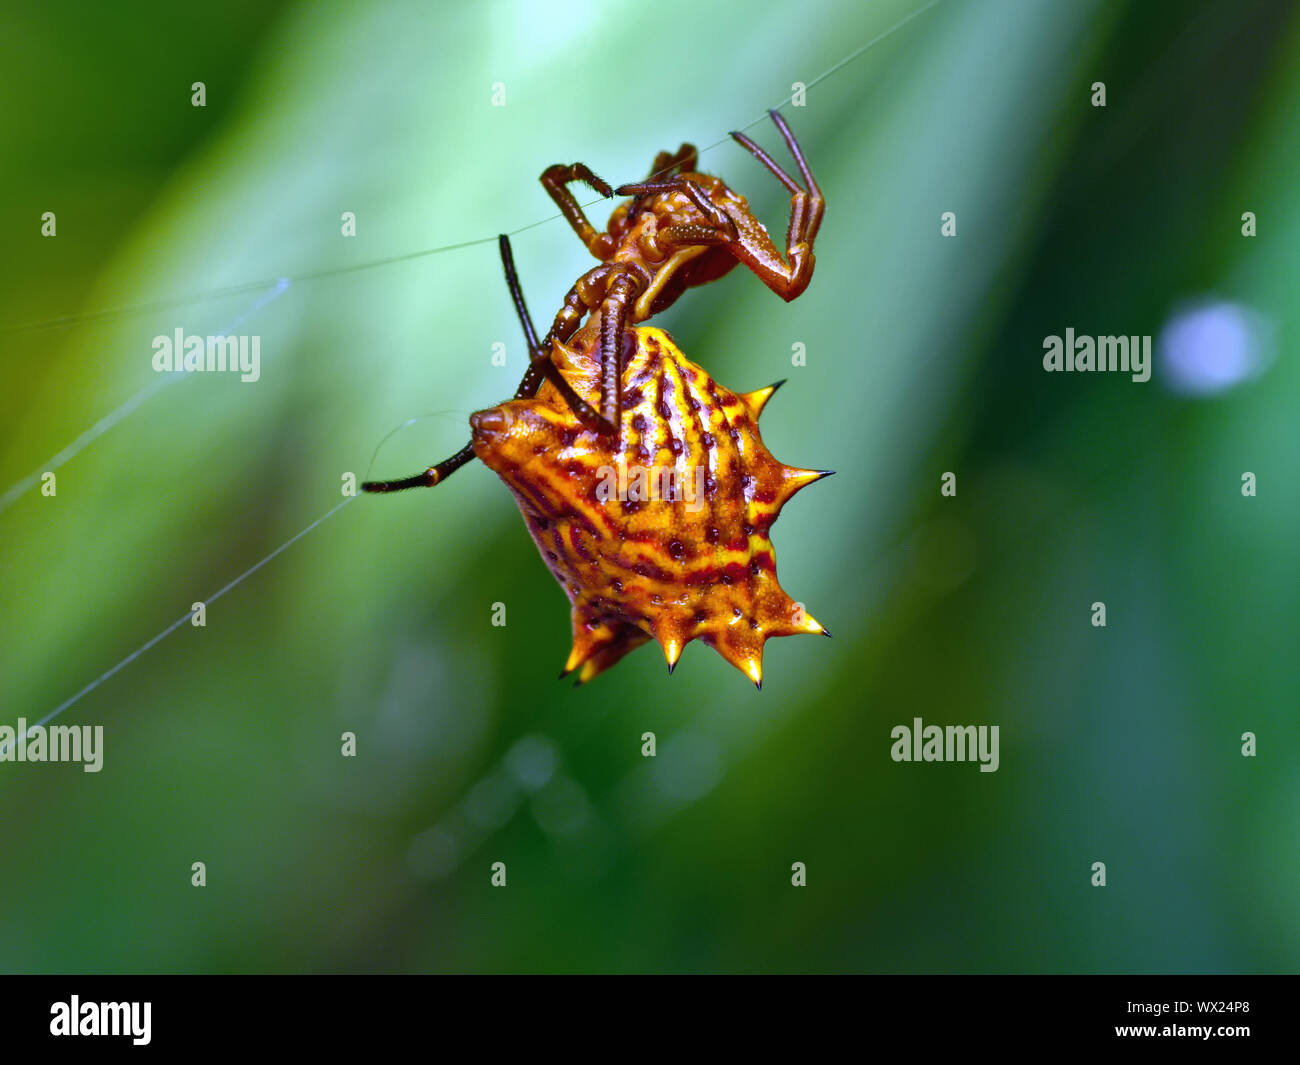 Eine weibliche Spinne, Spined micrathena Micrathena aus Buchsbaumholz, klettert ein einzelner Thread aus Seide, während Sie ein anderes aus der spinndüse mit einem hinteren Bein. Stockfoto